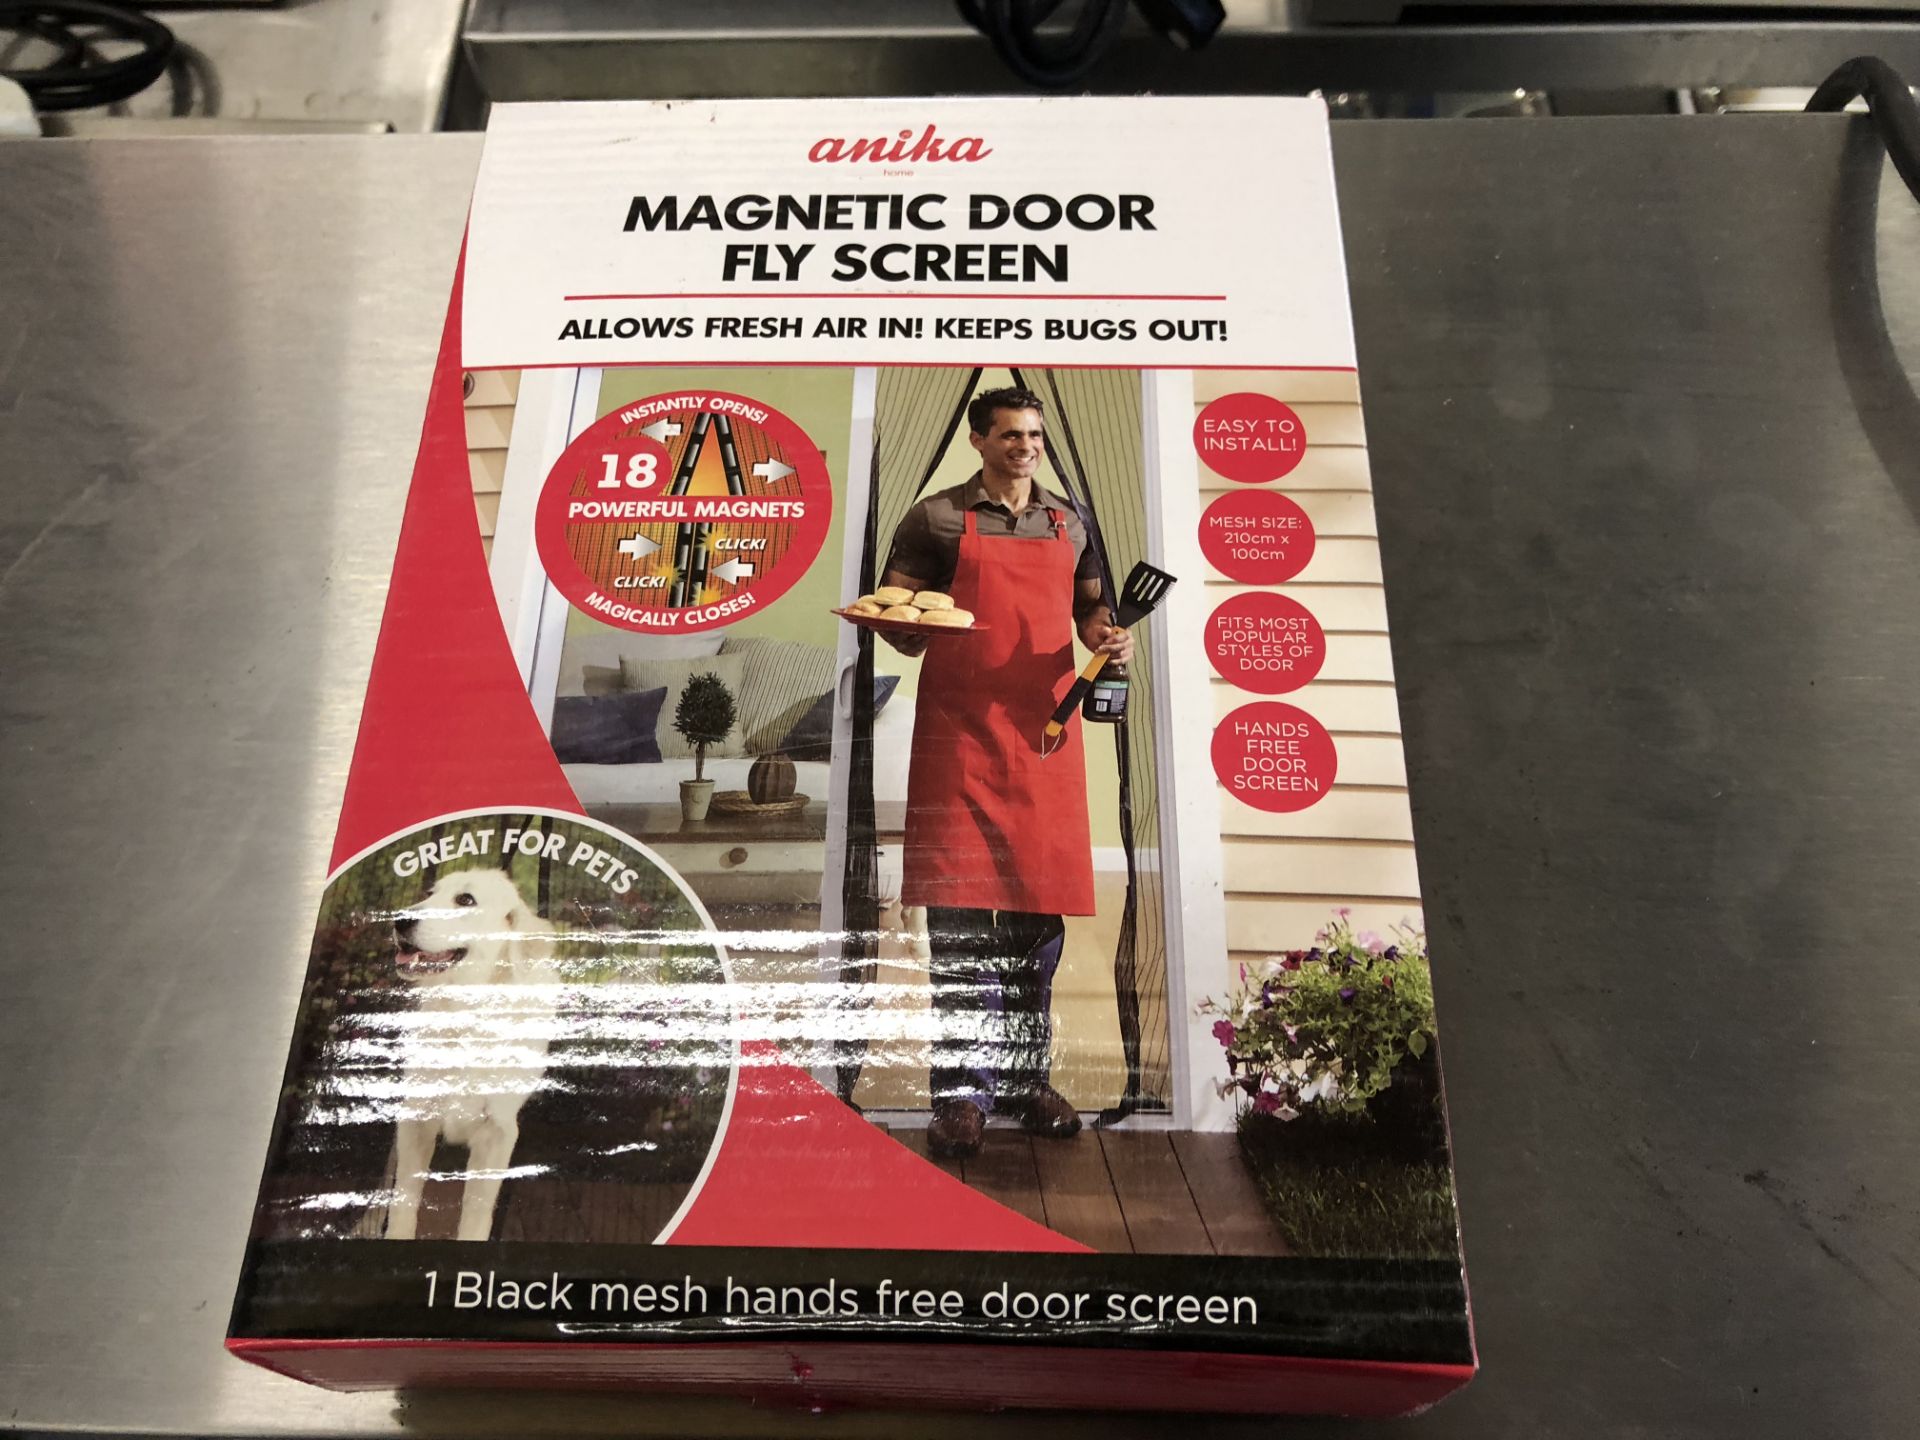 Magnetic Door Fly Screen, new in box